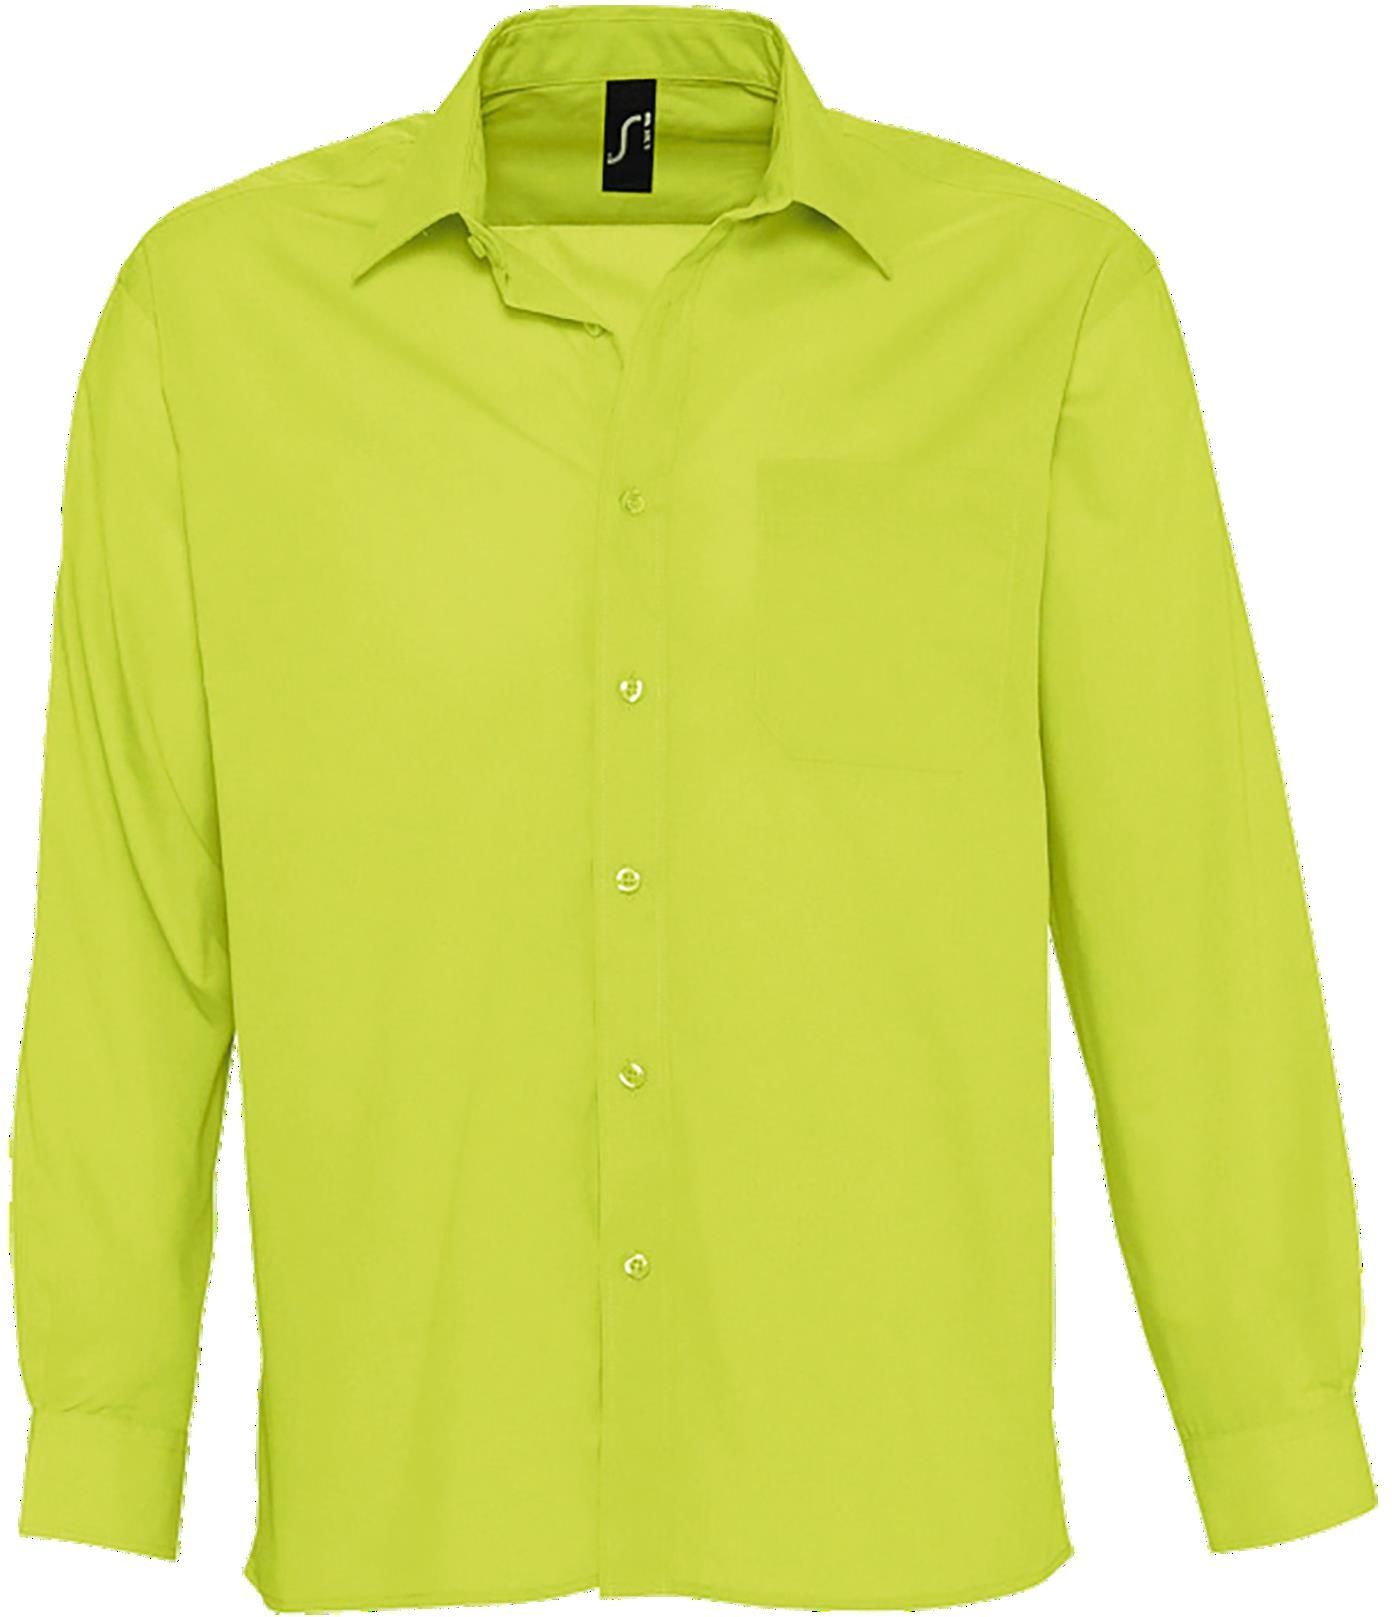 Ανδρικό μακρυμάνικο πουκάμισο από ποπλίνα Baltimore SOLS 16040 Apple Green